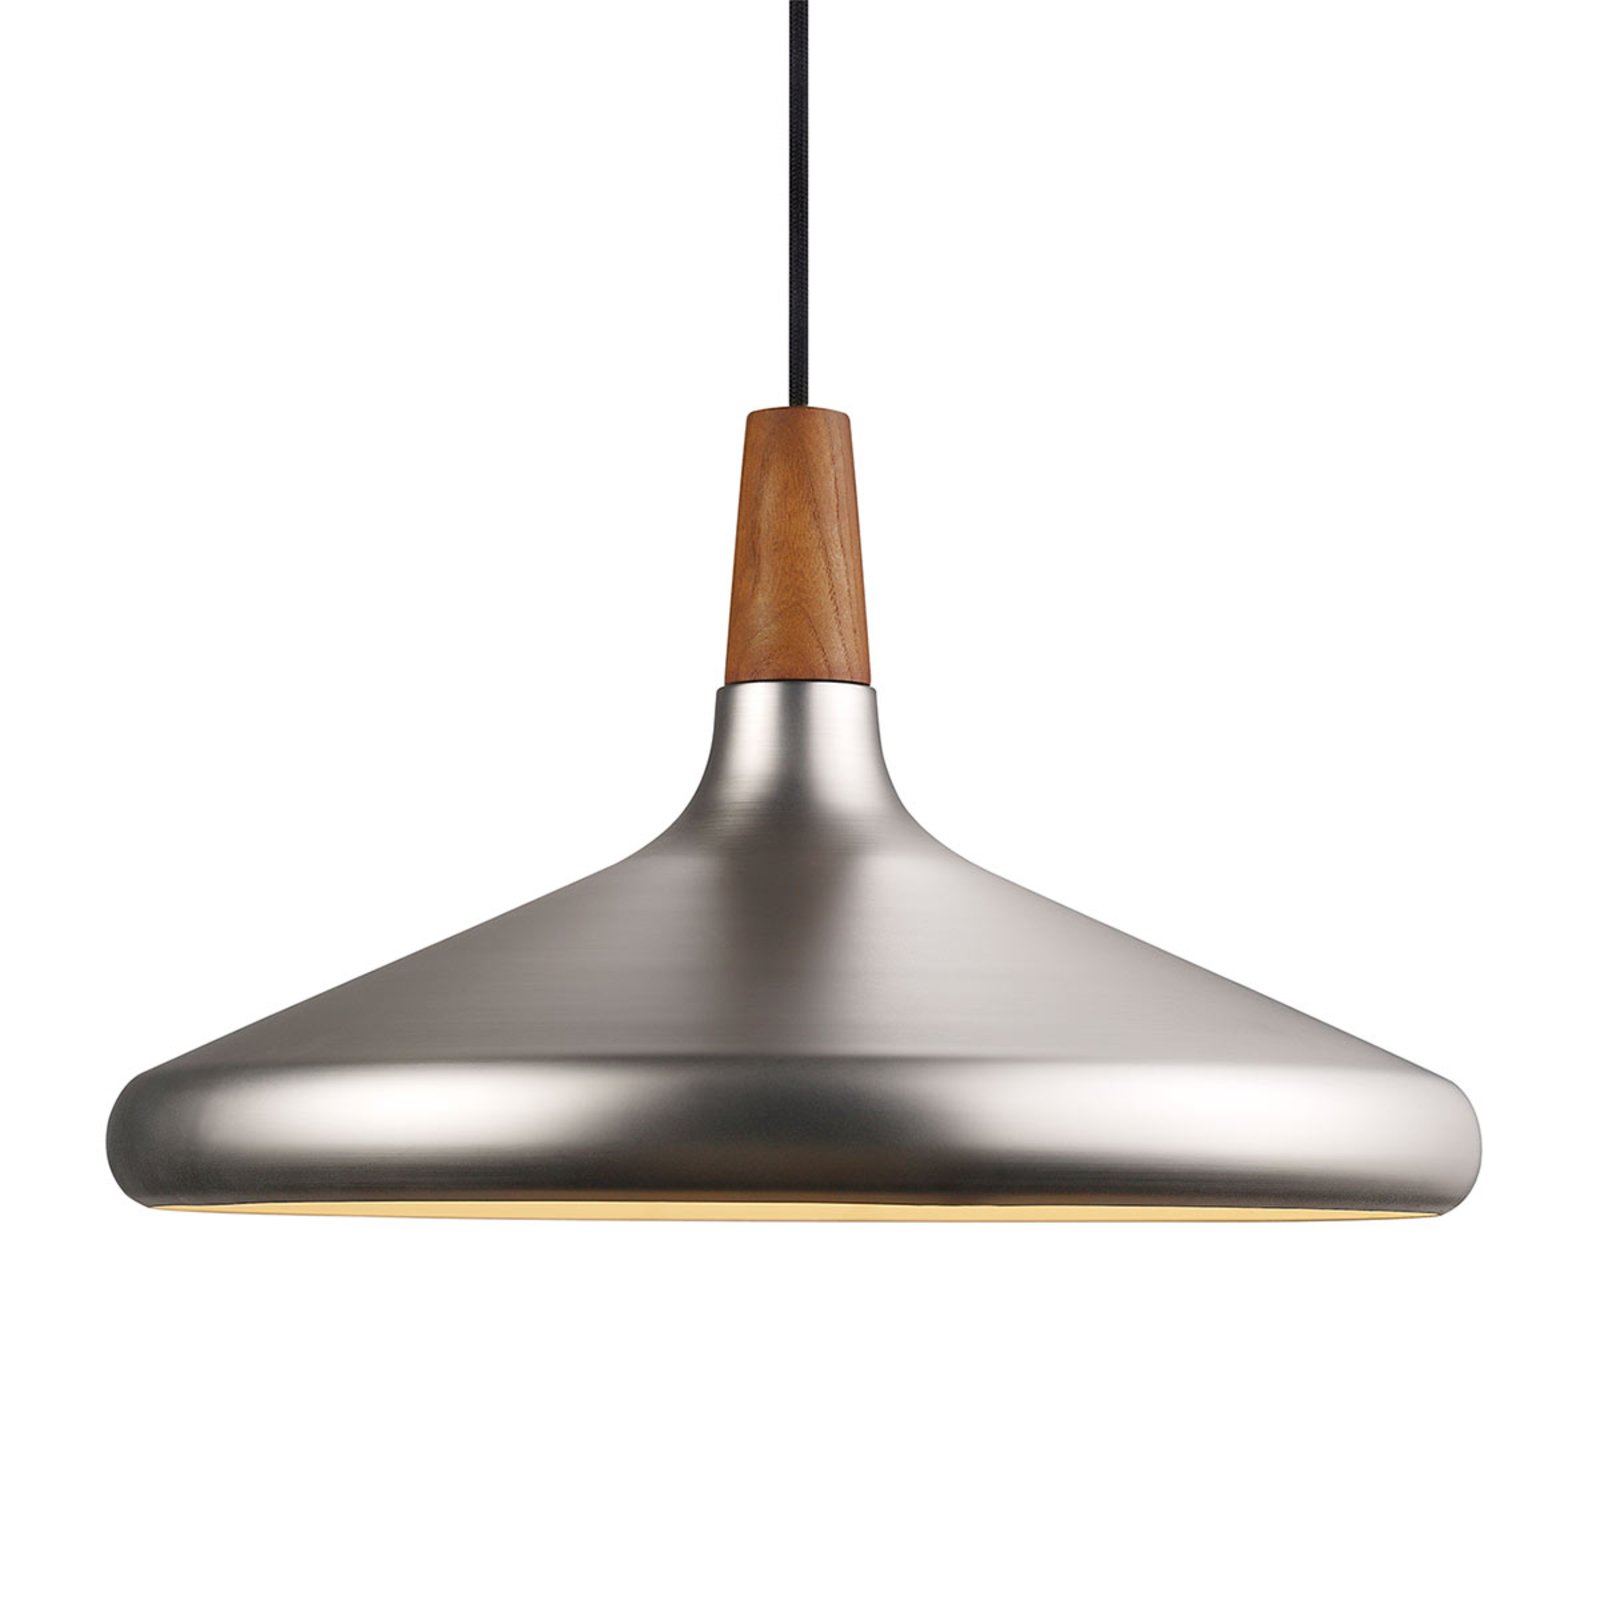 Függő lámpa Nori fémből, acél színű, Ø39 cm